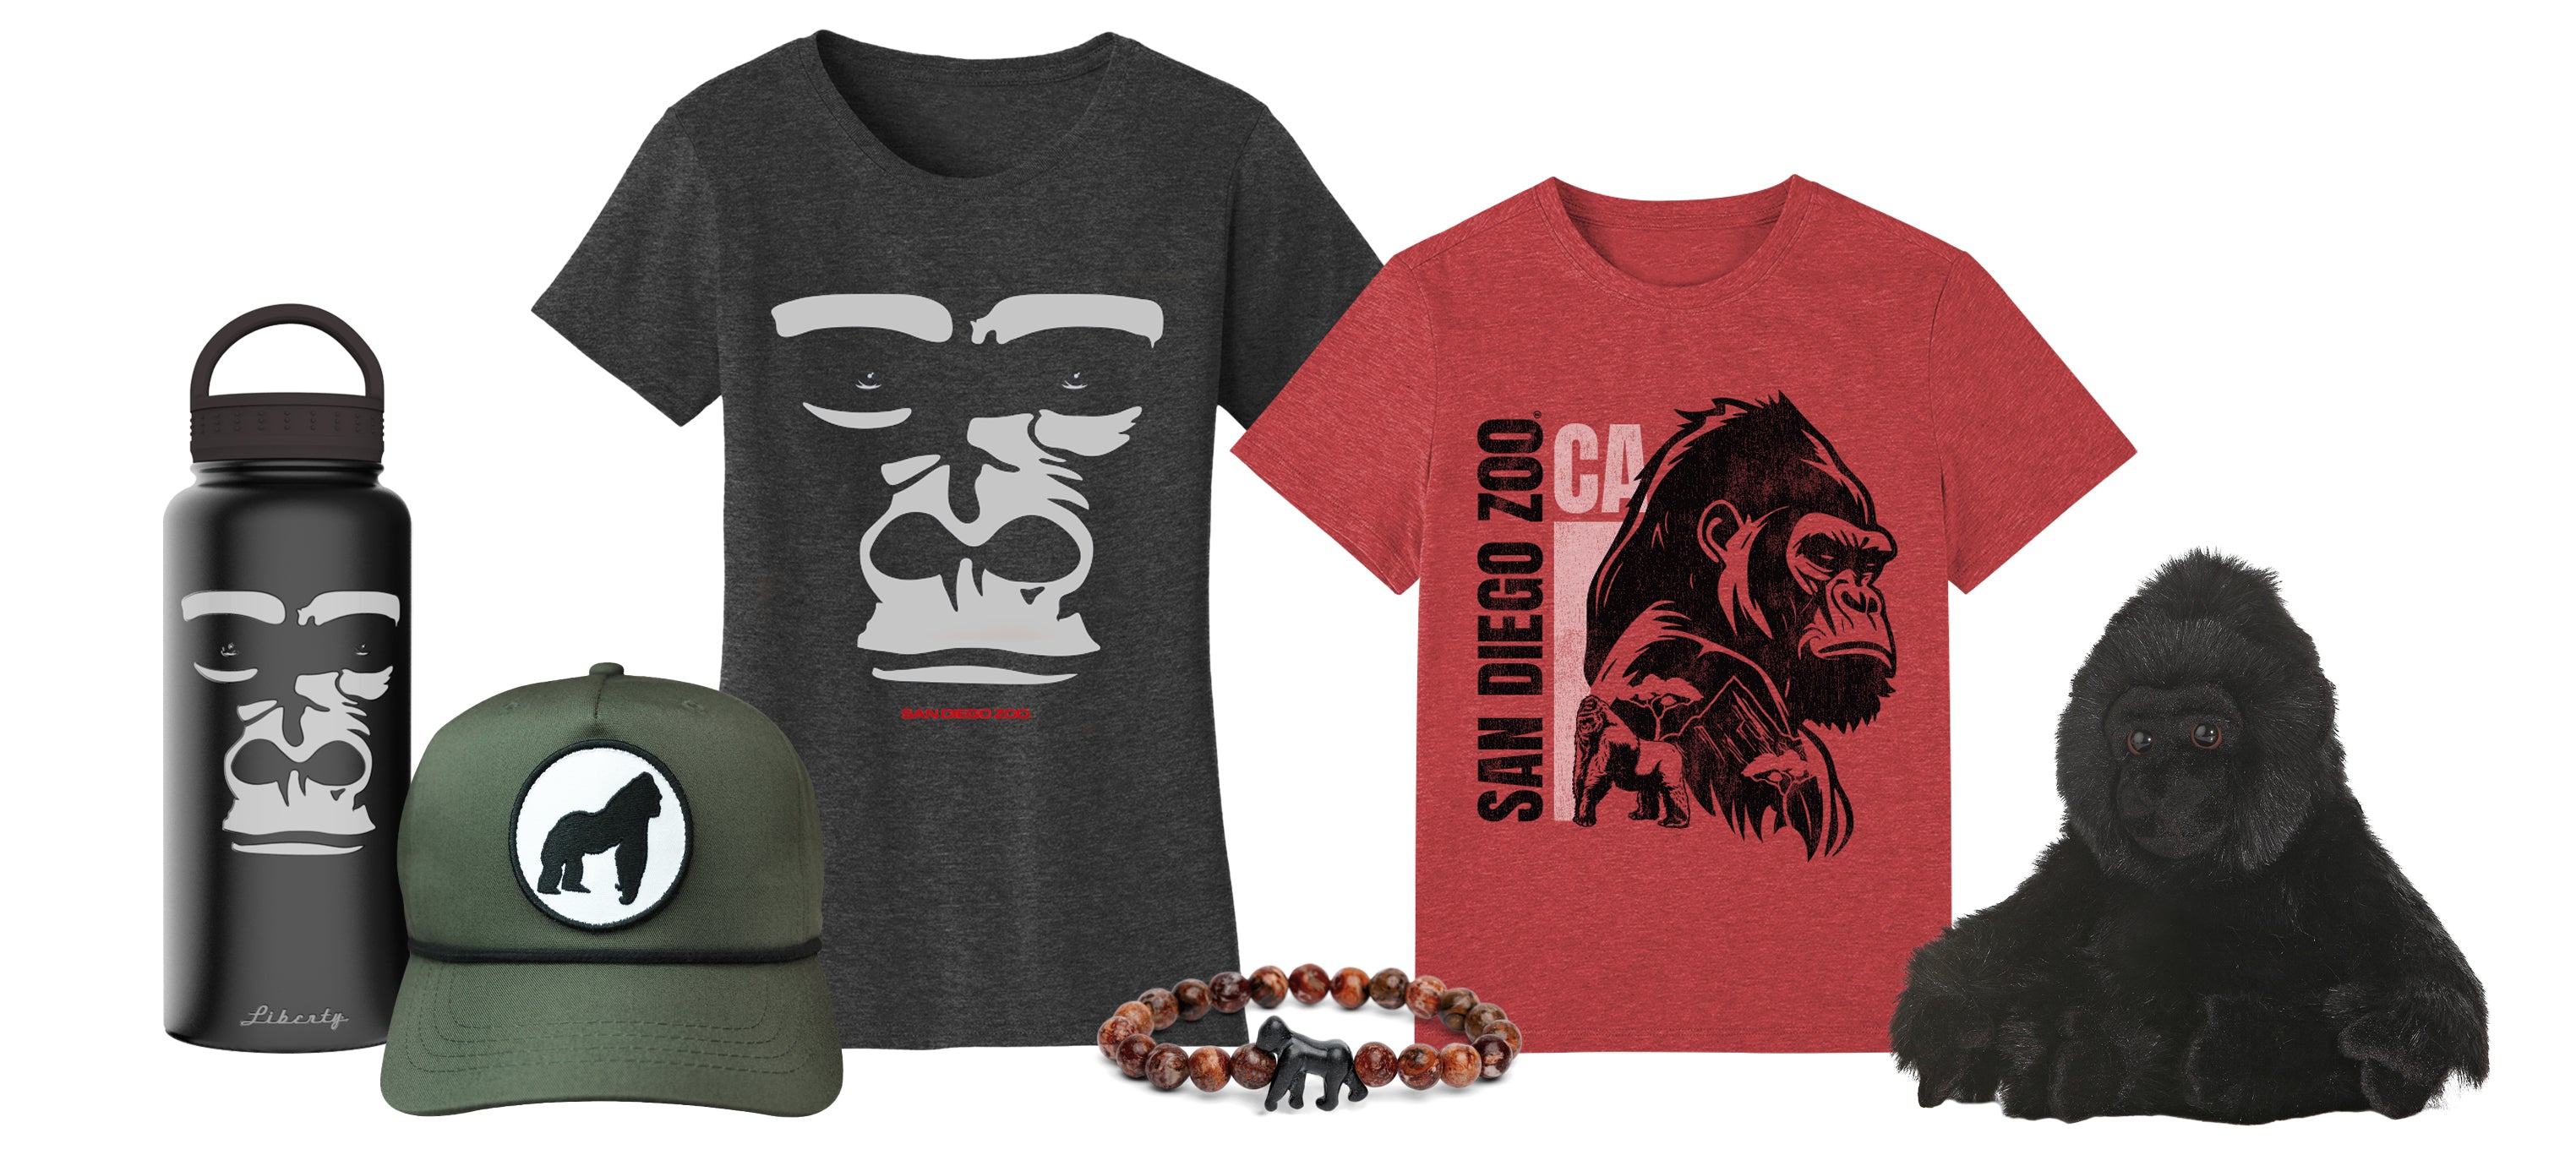 Gorilla Merchandise Collection